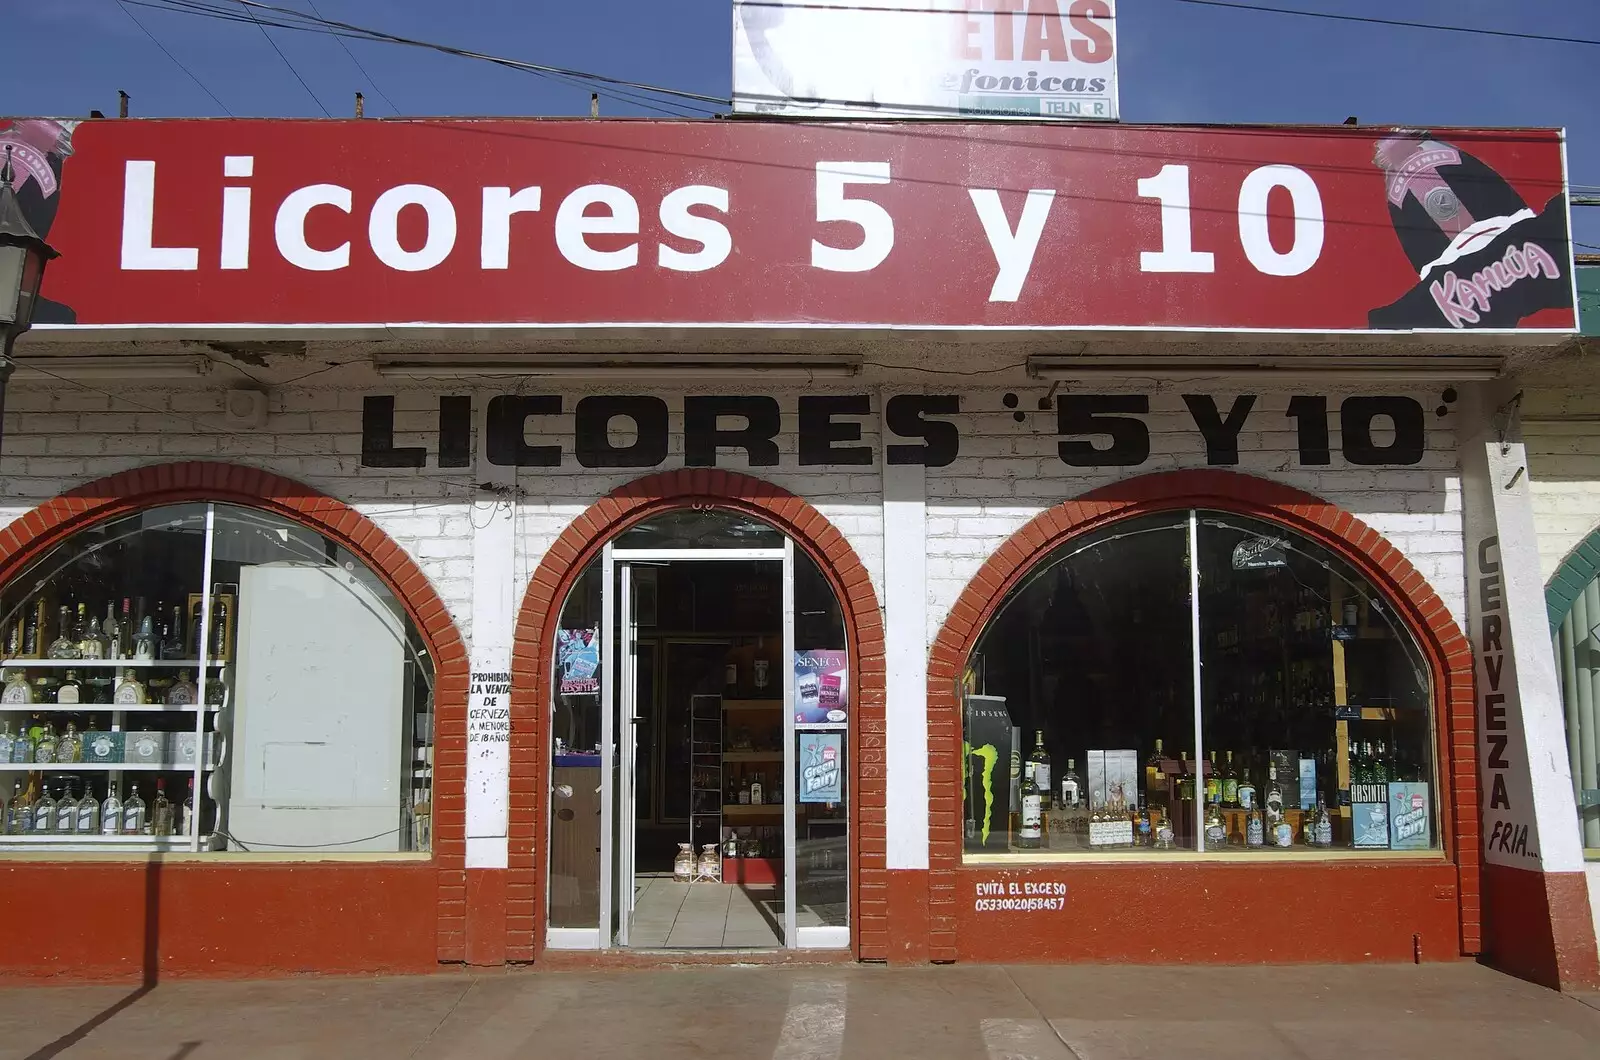 5 and 10 liquor store on Rosarito's main street, from Rosarito and Tijuana, Baja California, Mexico - 2nd March 2008